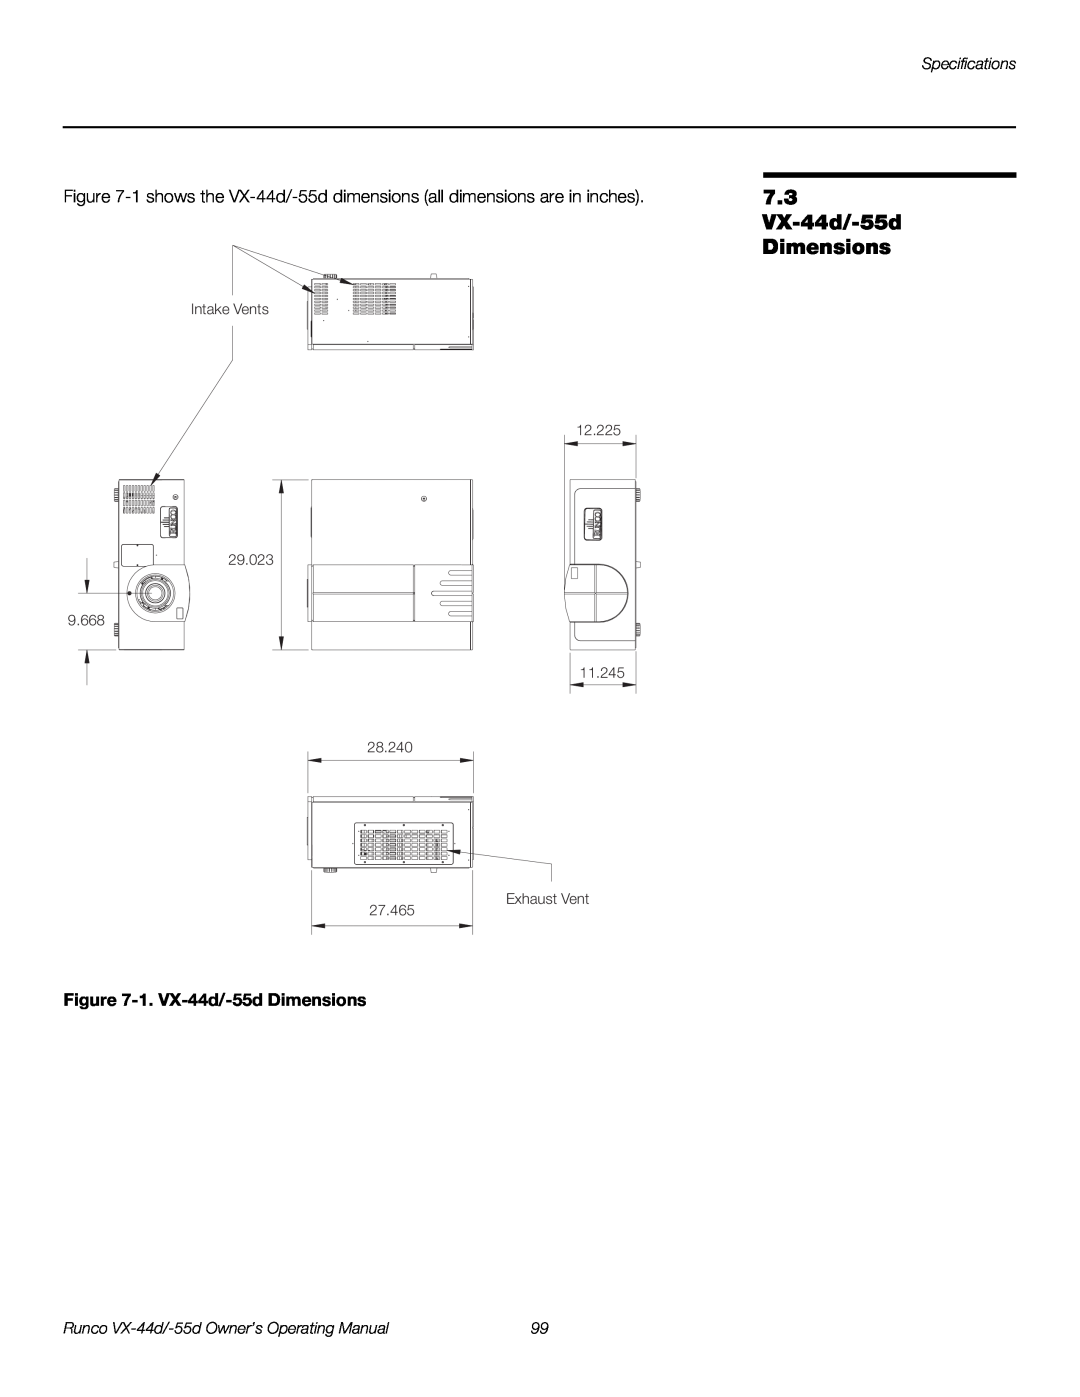 Runco 1080p manual 7.3 VX-44d/-55d Dimensions, 1. VX-44d/-55d Dimensions, Specifications 